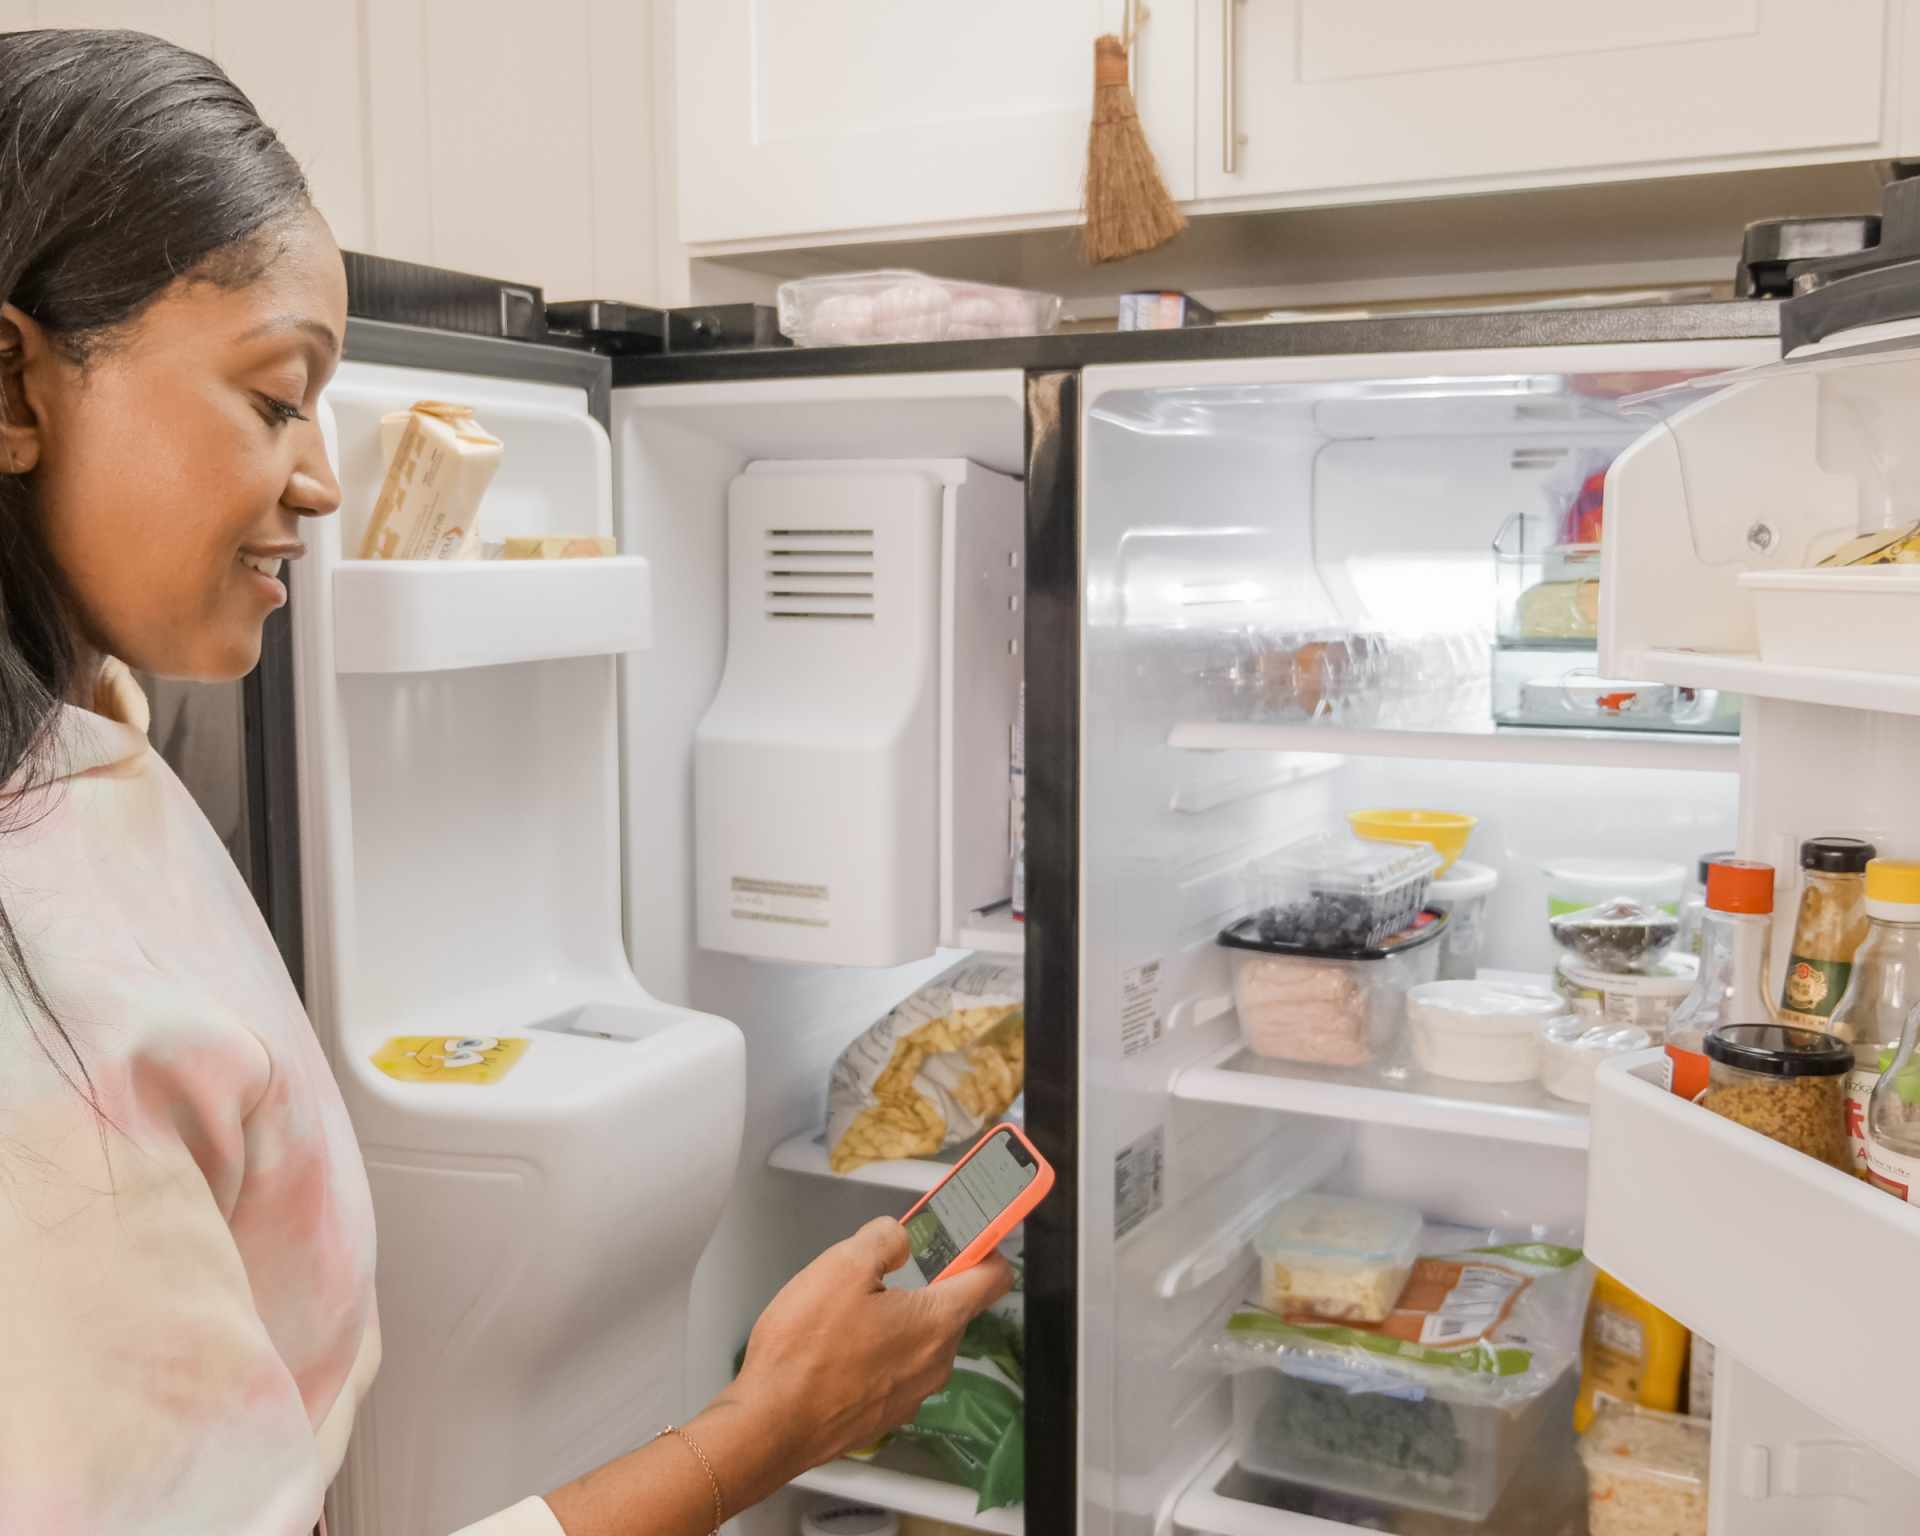 Žena stojí pred otvorenou chladničkou a rozmýšľa čo uvarí - hľadá čo chladnička dá